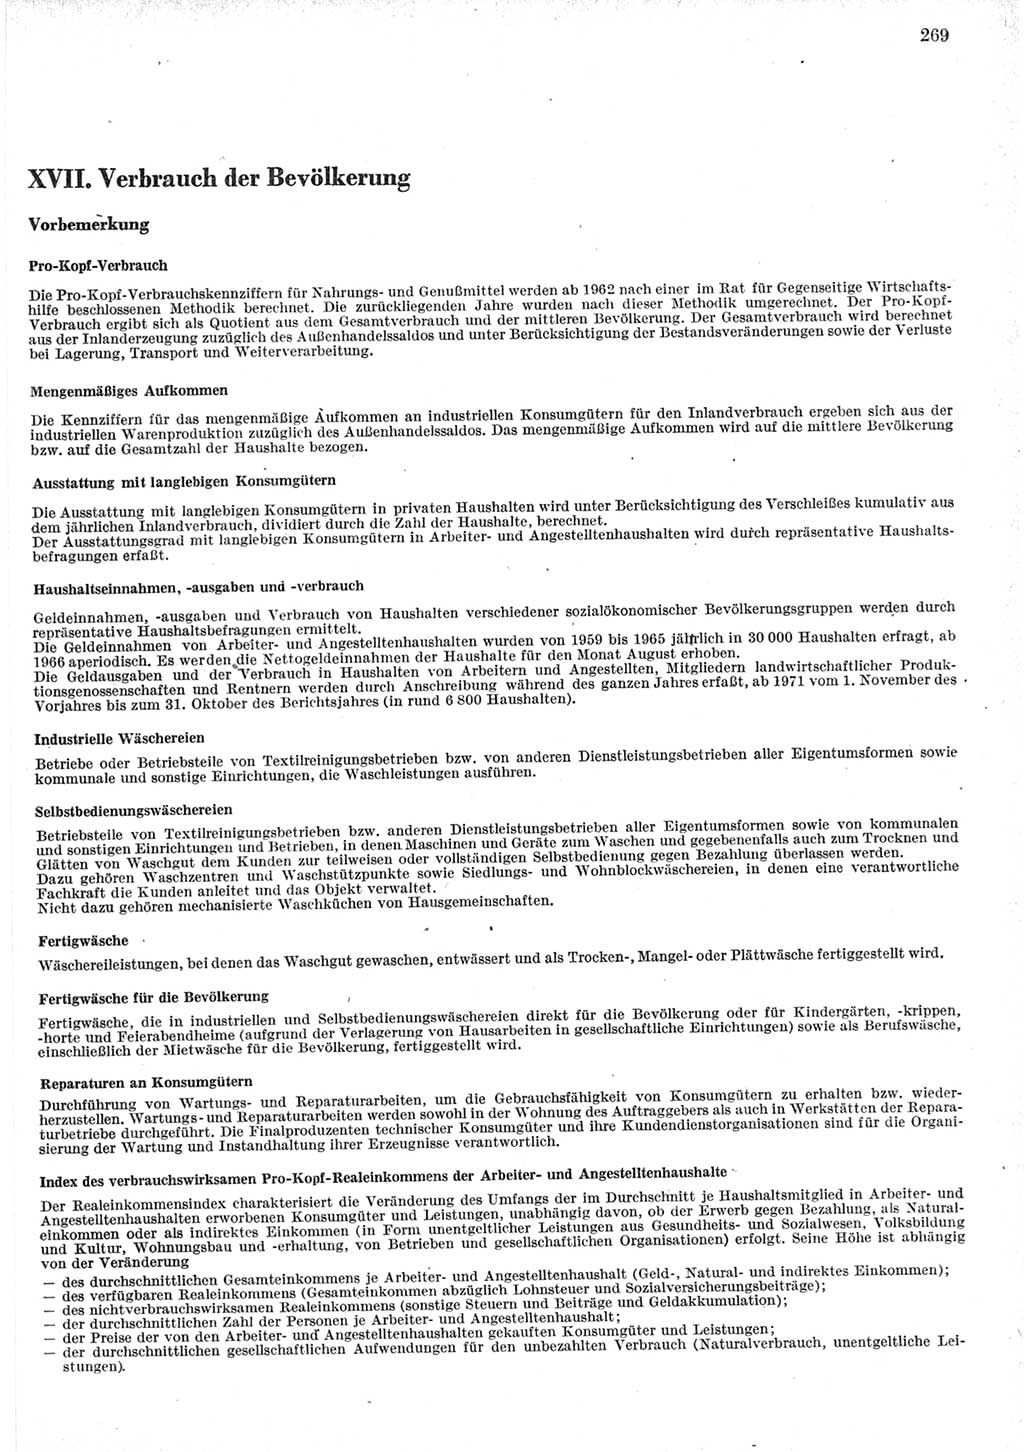 Statistisches Jahrbuch der Deutschen Demokratischen Republik (DDR) 1979, Seite 269 (Stat. Jb. DDR 1979, S. 269)